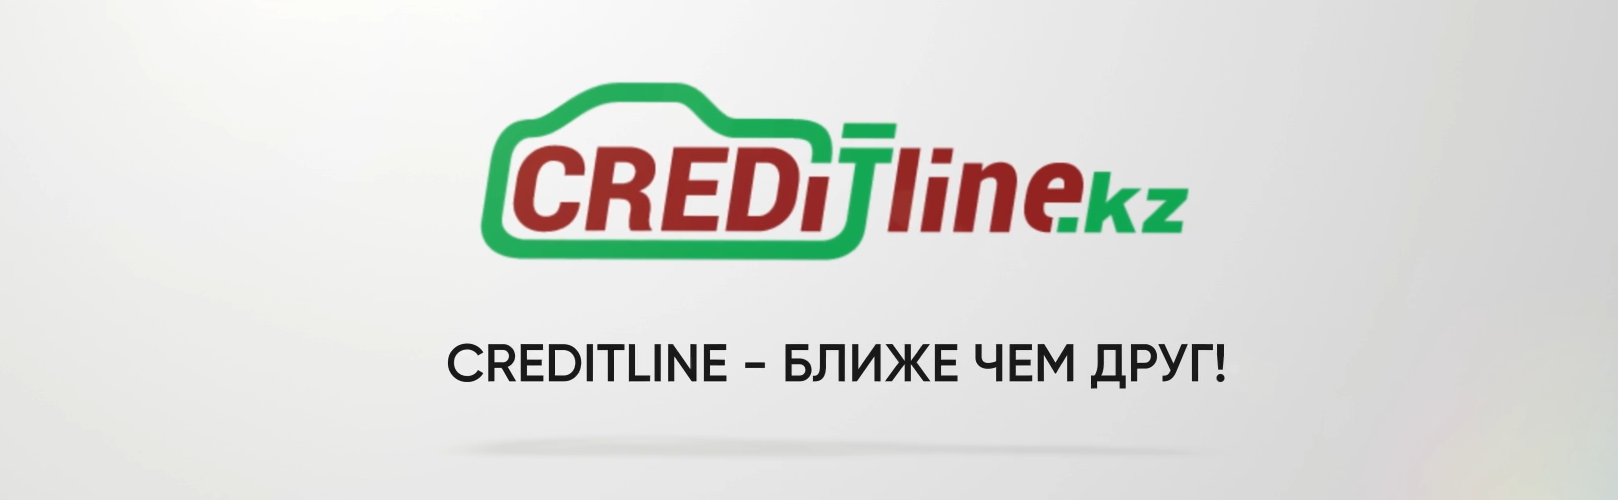 Рекламный ролик для автоломбарда Creditline.kz